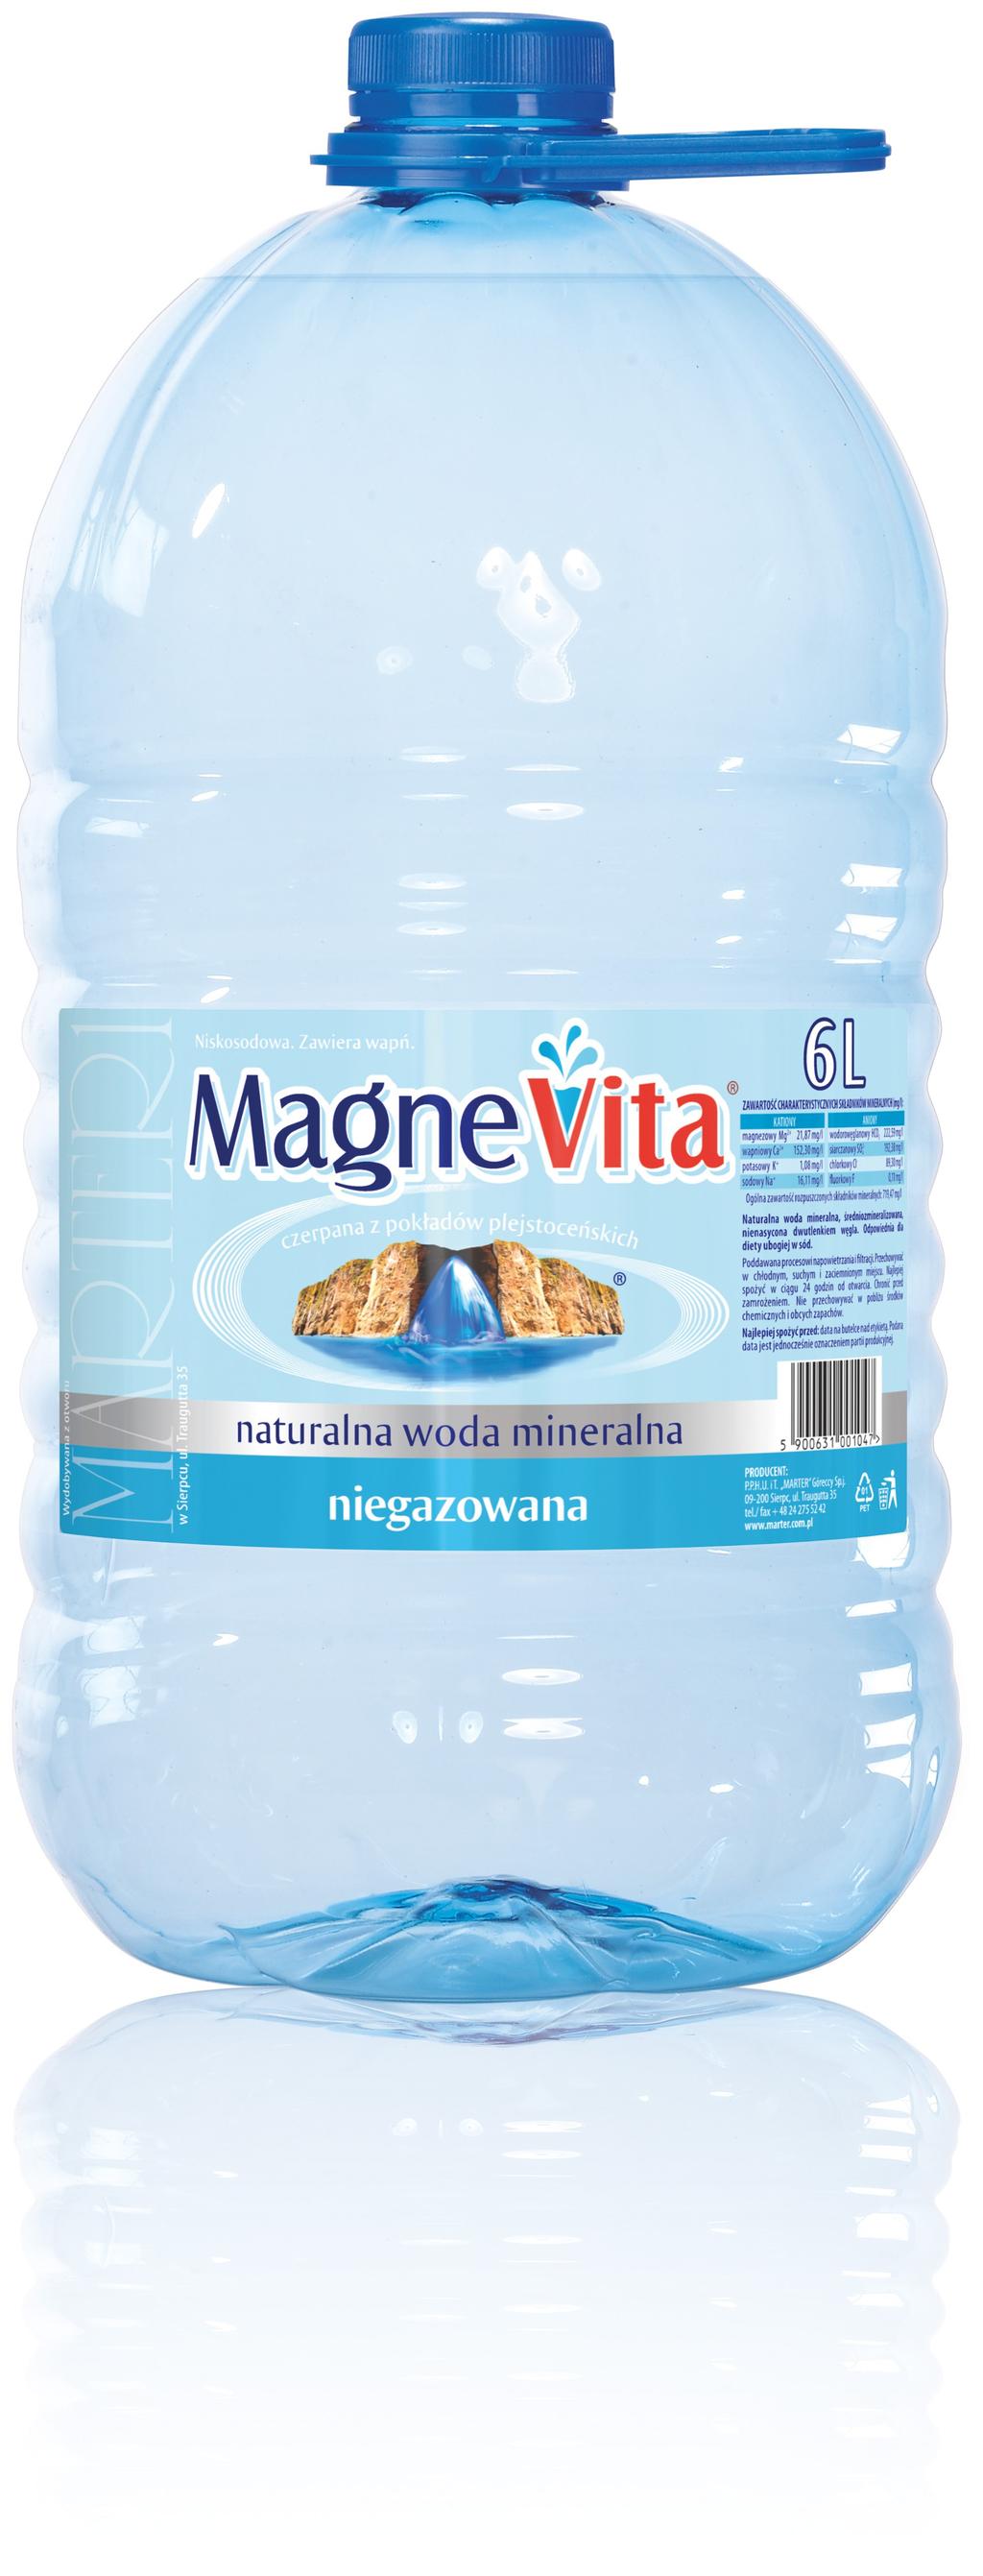 Produkt MagneVita to naturalna woda mineralna z niską zawartością sodu, średniozmineralizowana.